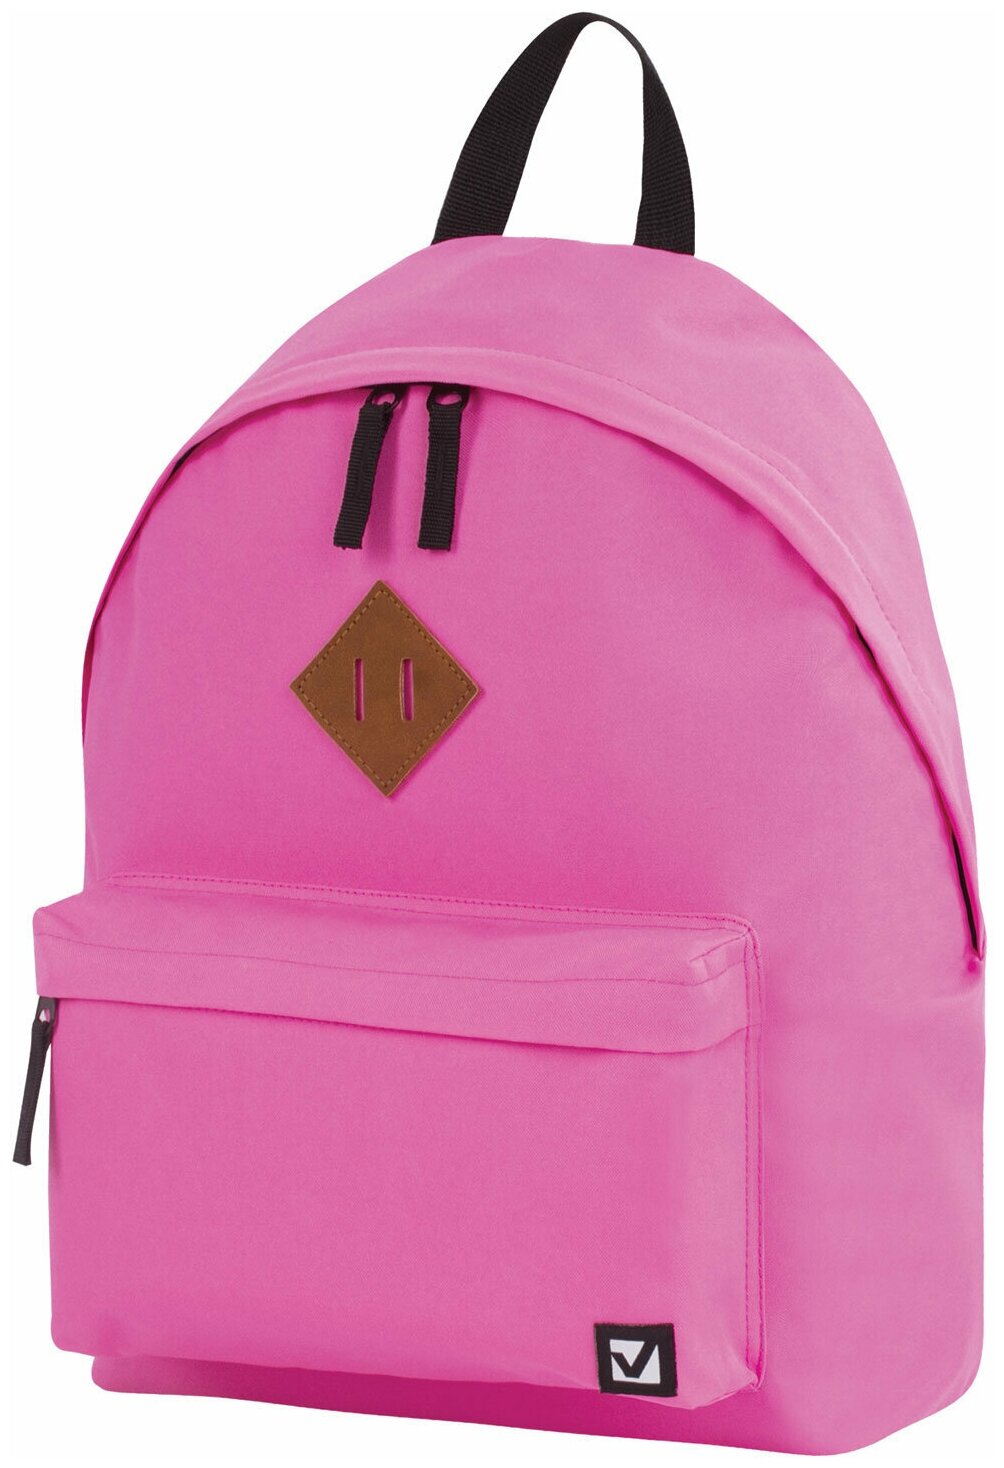 Рюкзак универсальный Brauberg сити-формат, один тон, розовый, 20 литров, 41х32х14 см (228843)